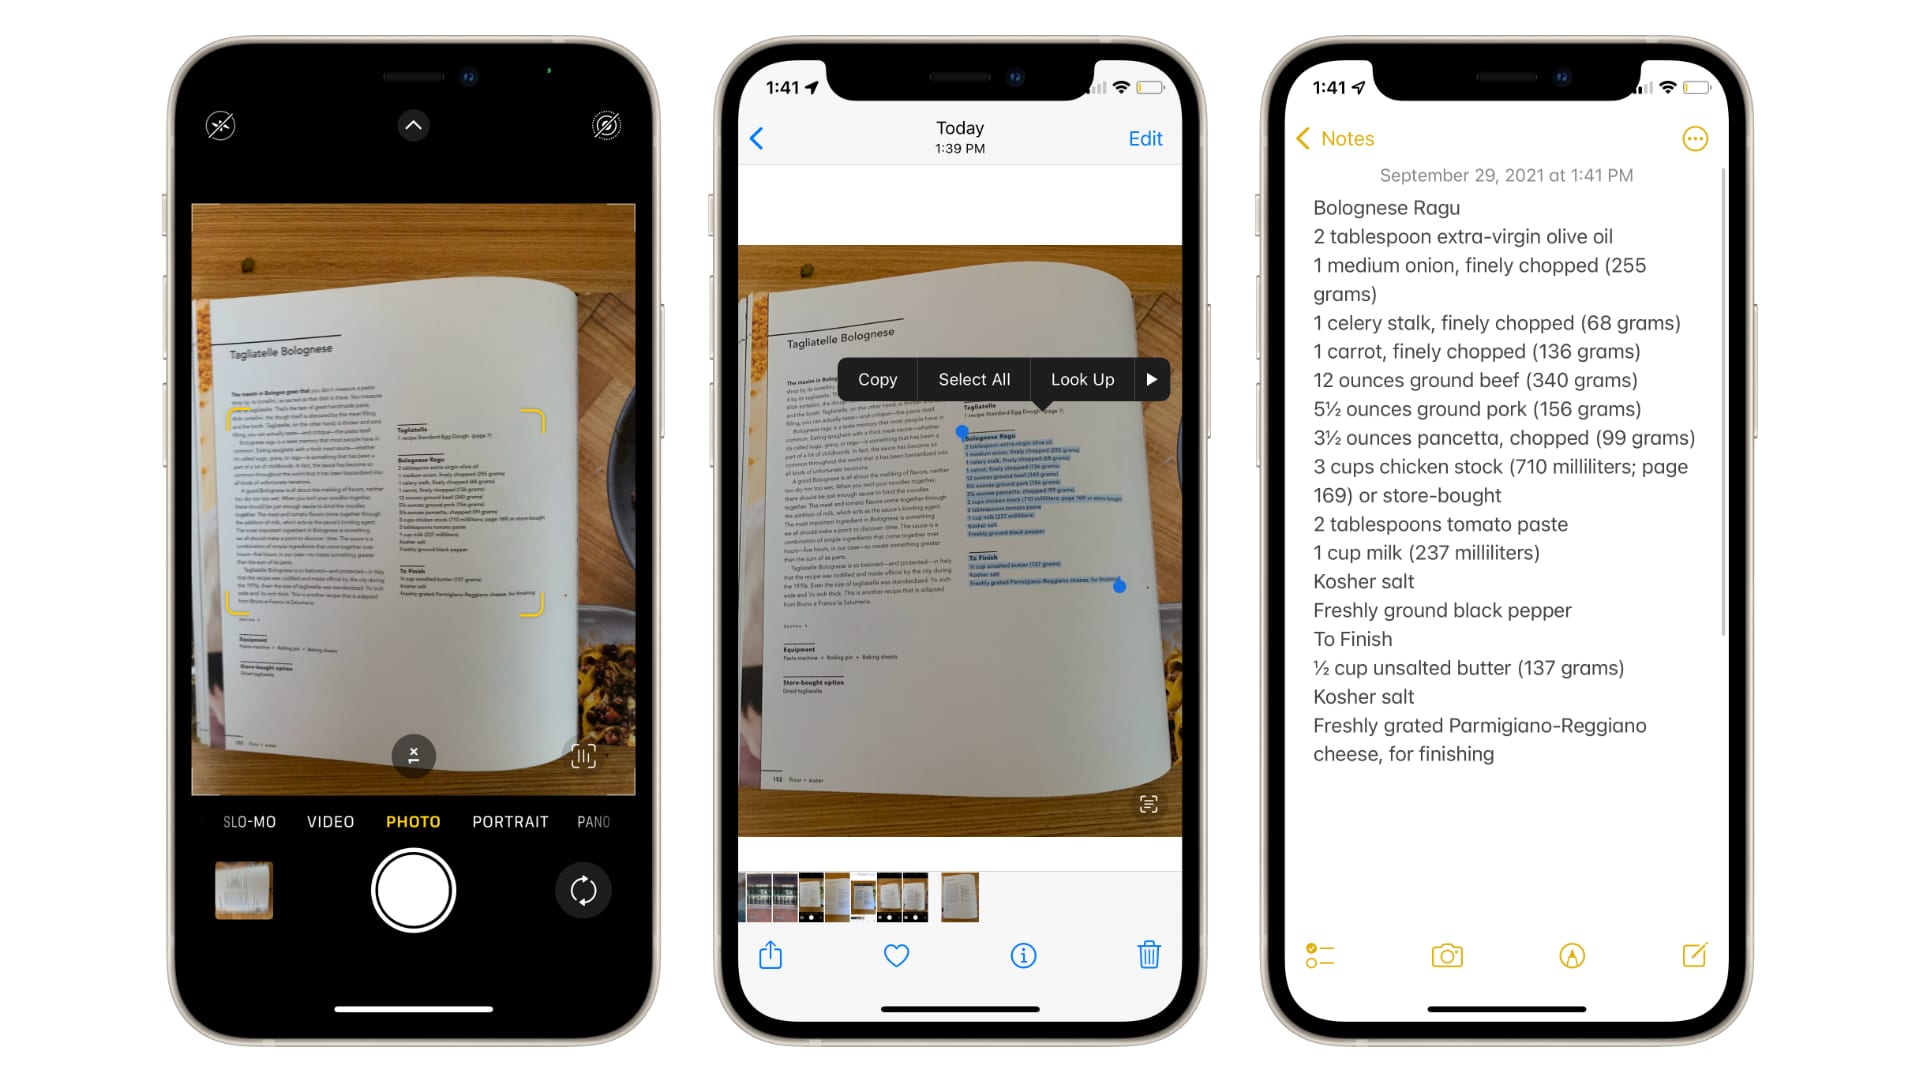 Cách sao chép và dán nội dung văn bản trong ảnh trên iPhone